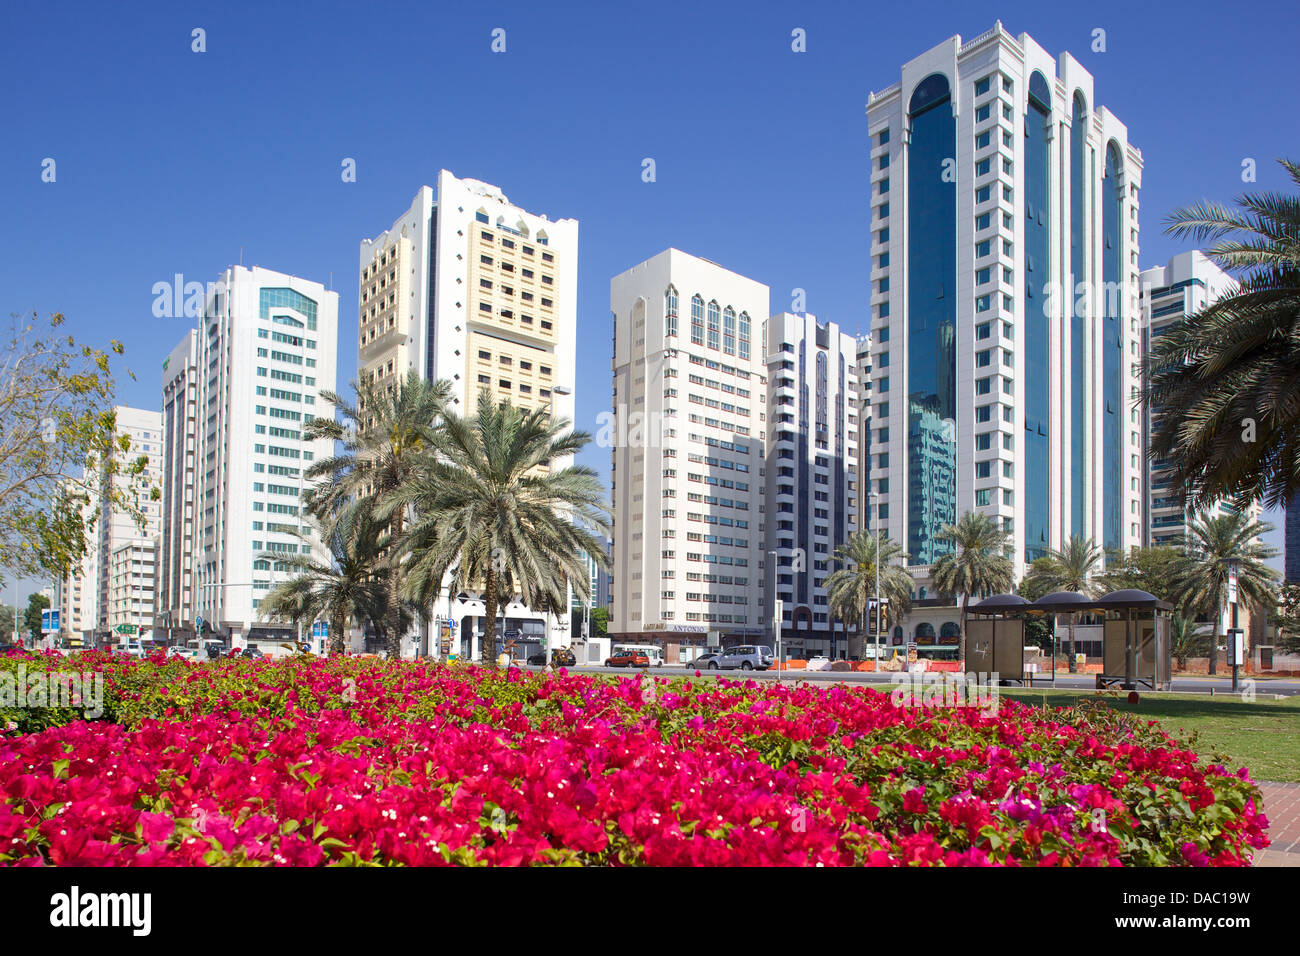 L'architecture contemporaine et jardins Markaziyah Al et Fontaine, Abu Dhabi, Émirats arabes unis, Moyen Orient Banque D'Images